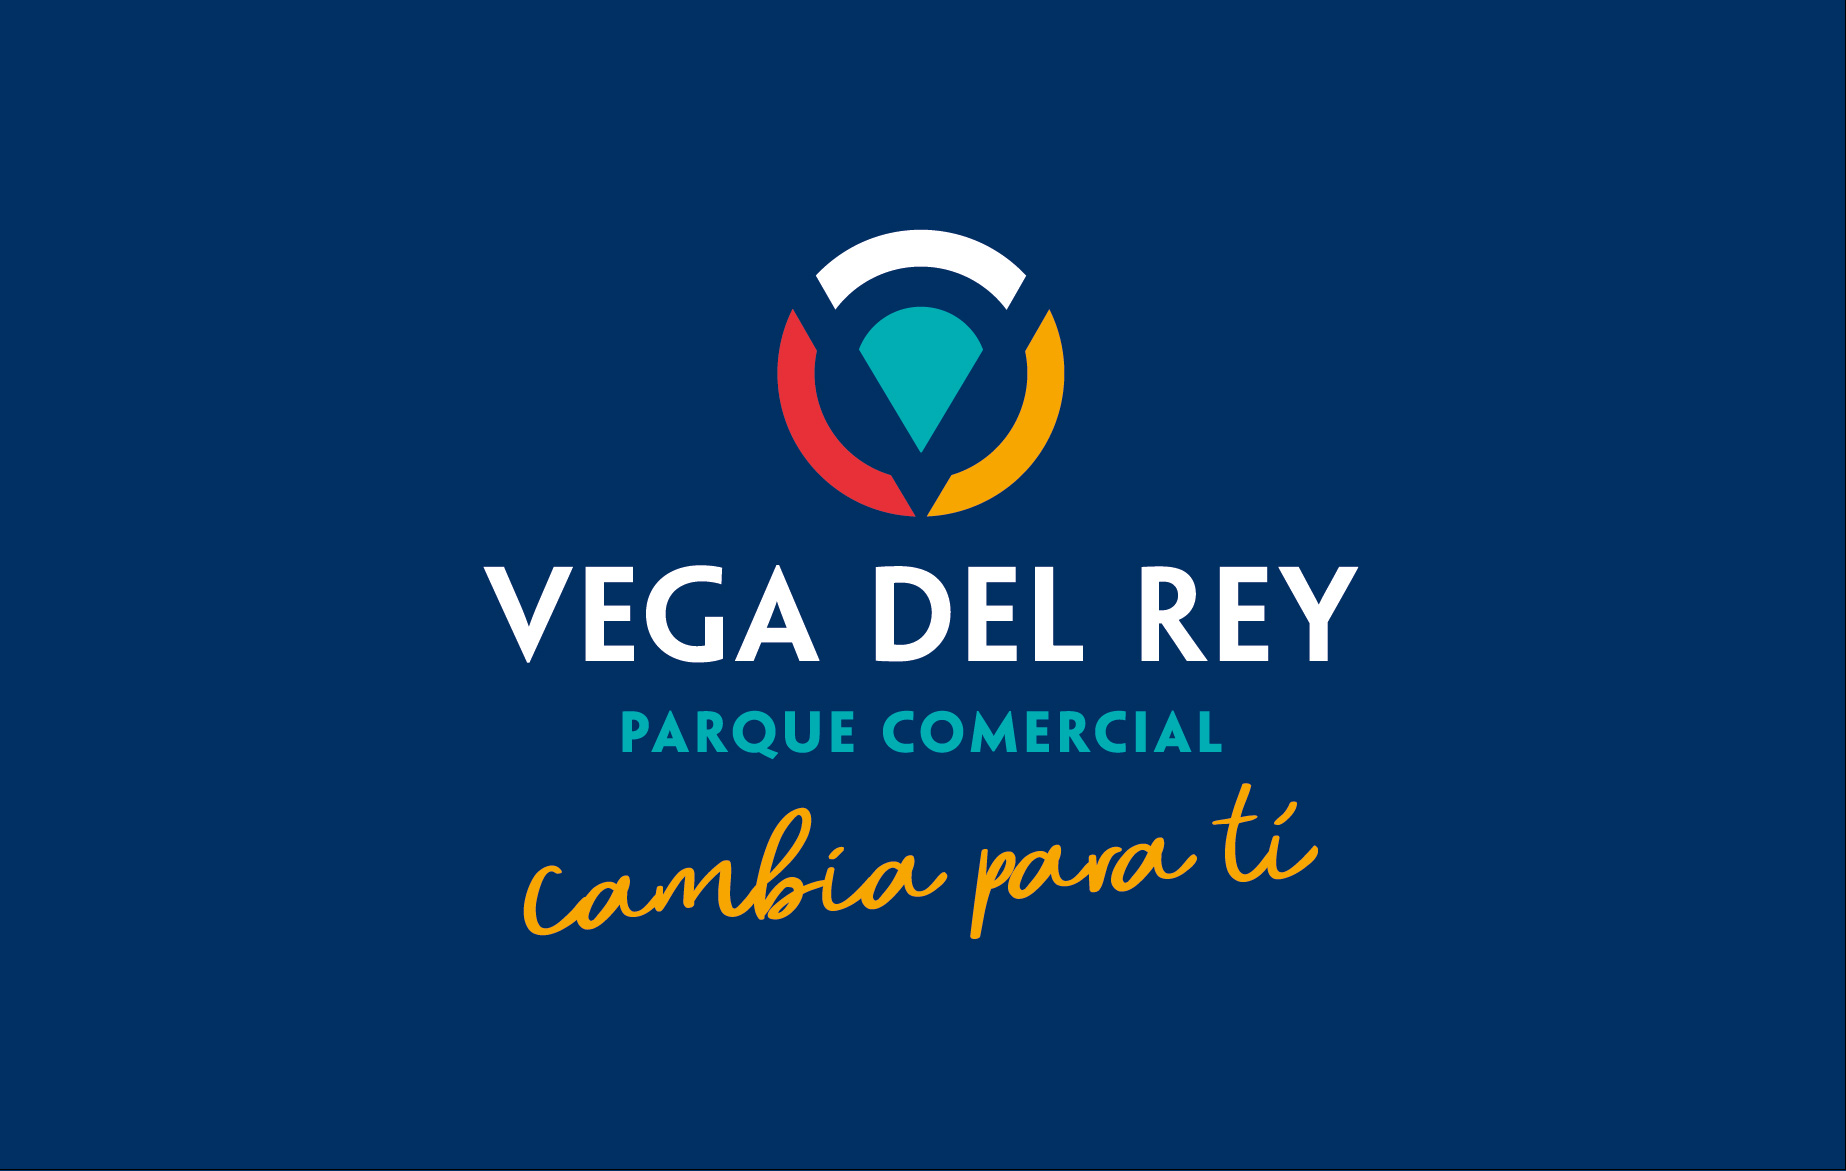 Nueva identidad visual para el Parque Comercial Vega del Rey